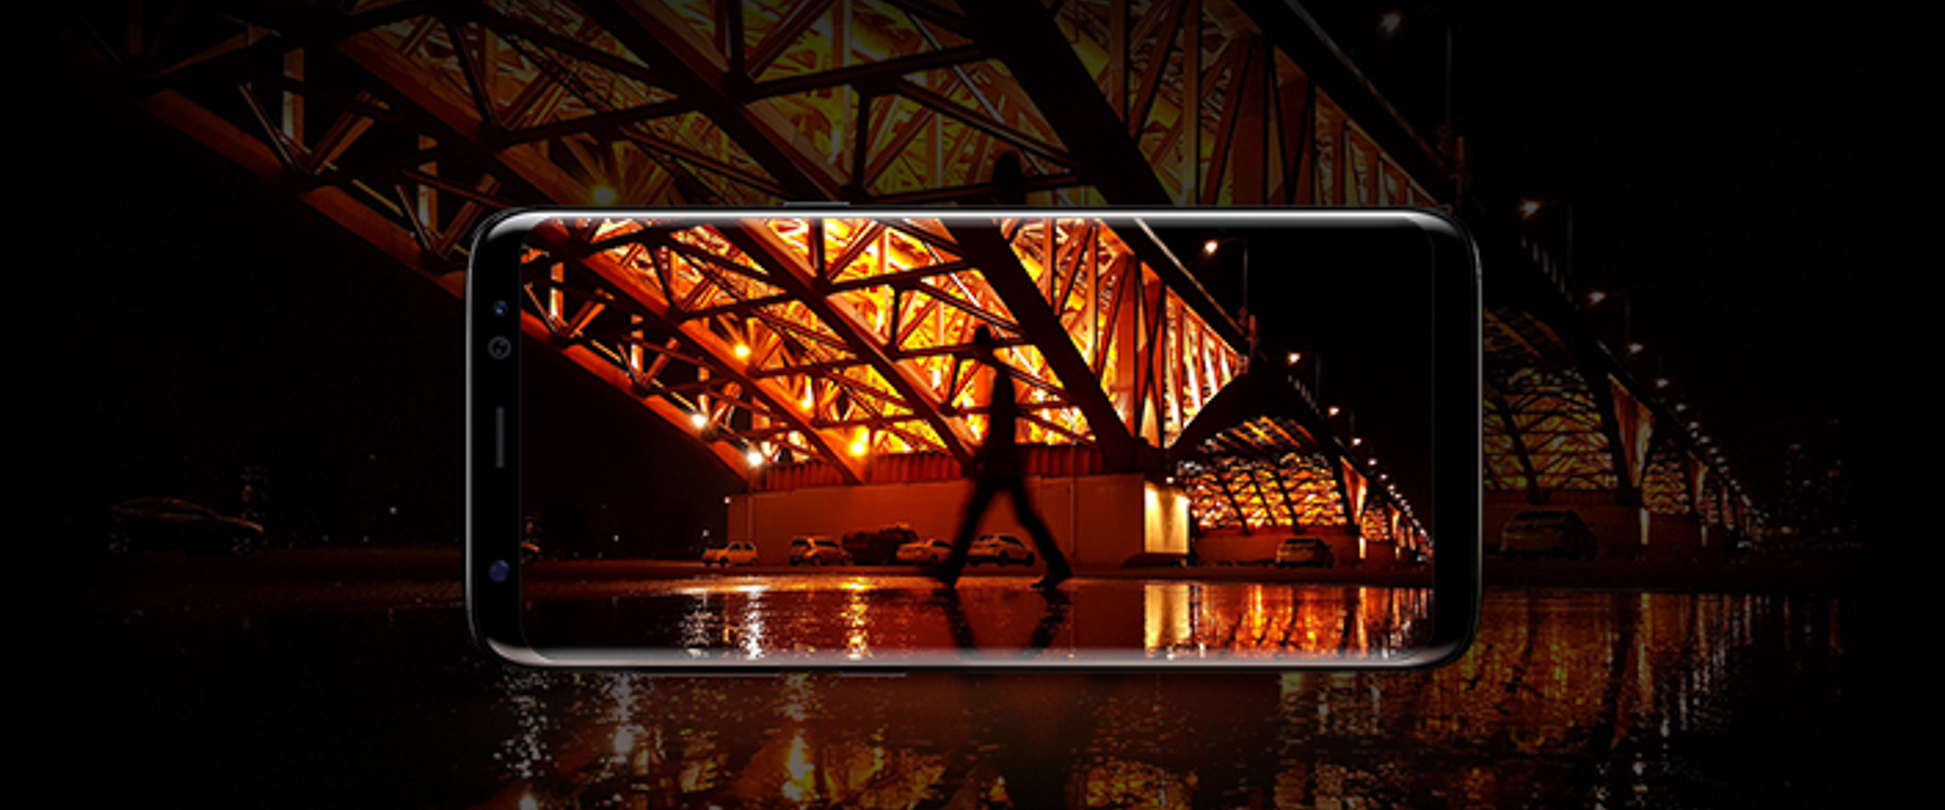 Camera của Galaxy S8: Nâng cấp phần cứng camera trước và tăng khả năng xử lý hình ảnh camera sau